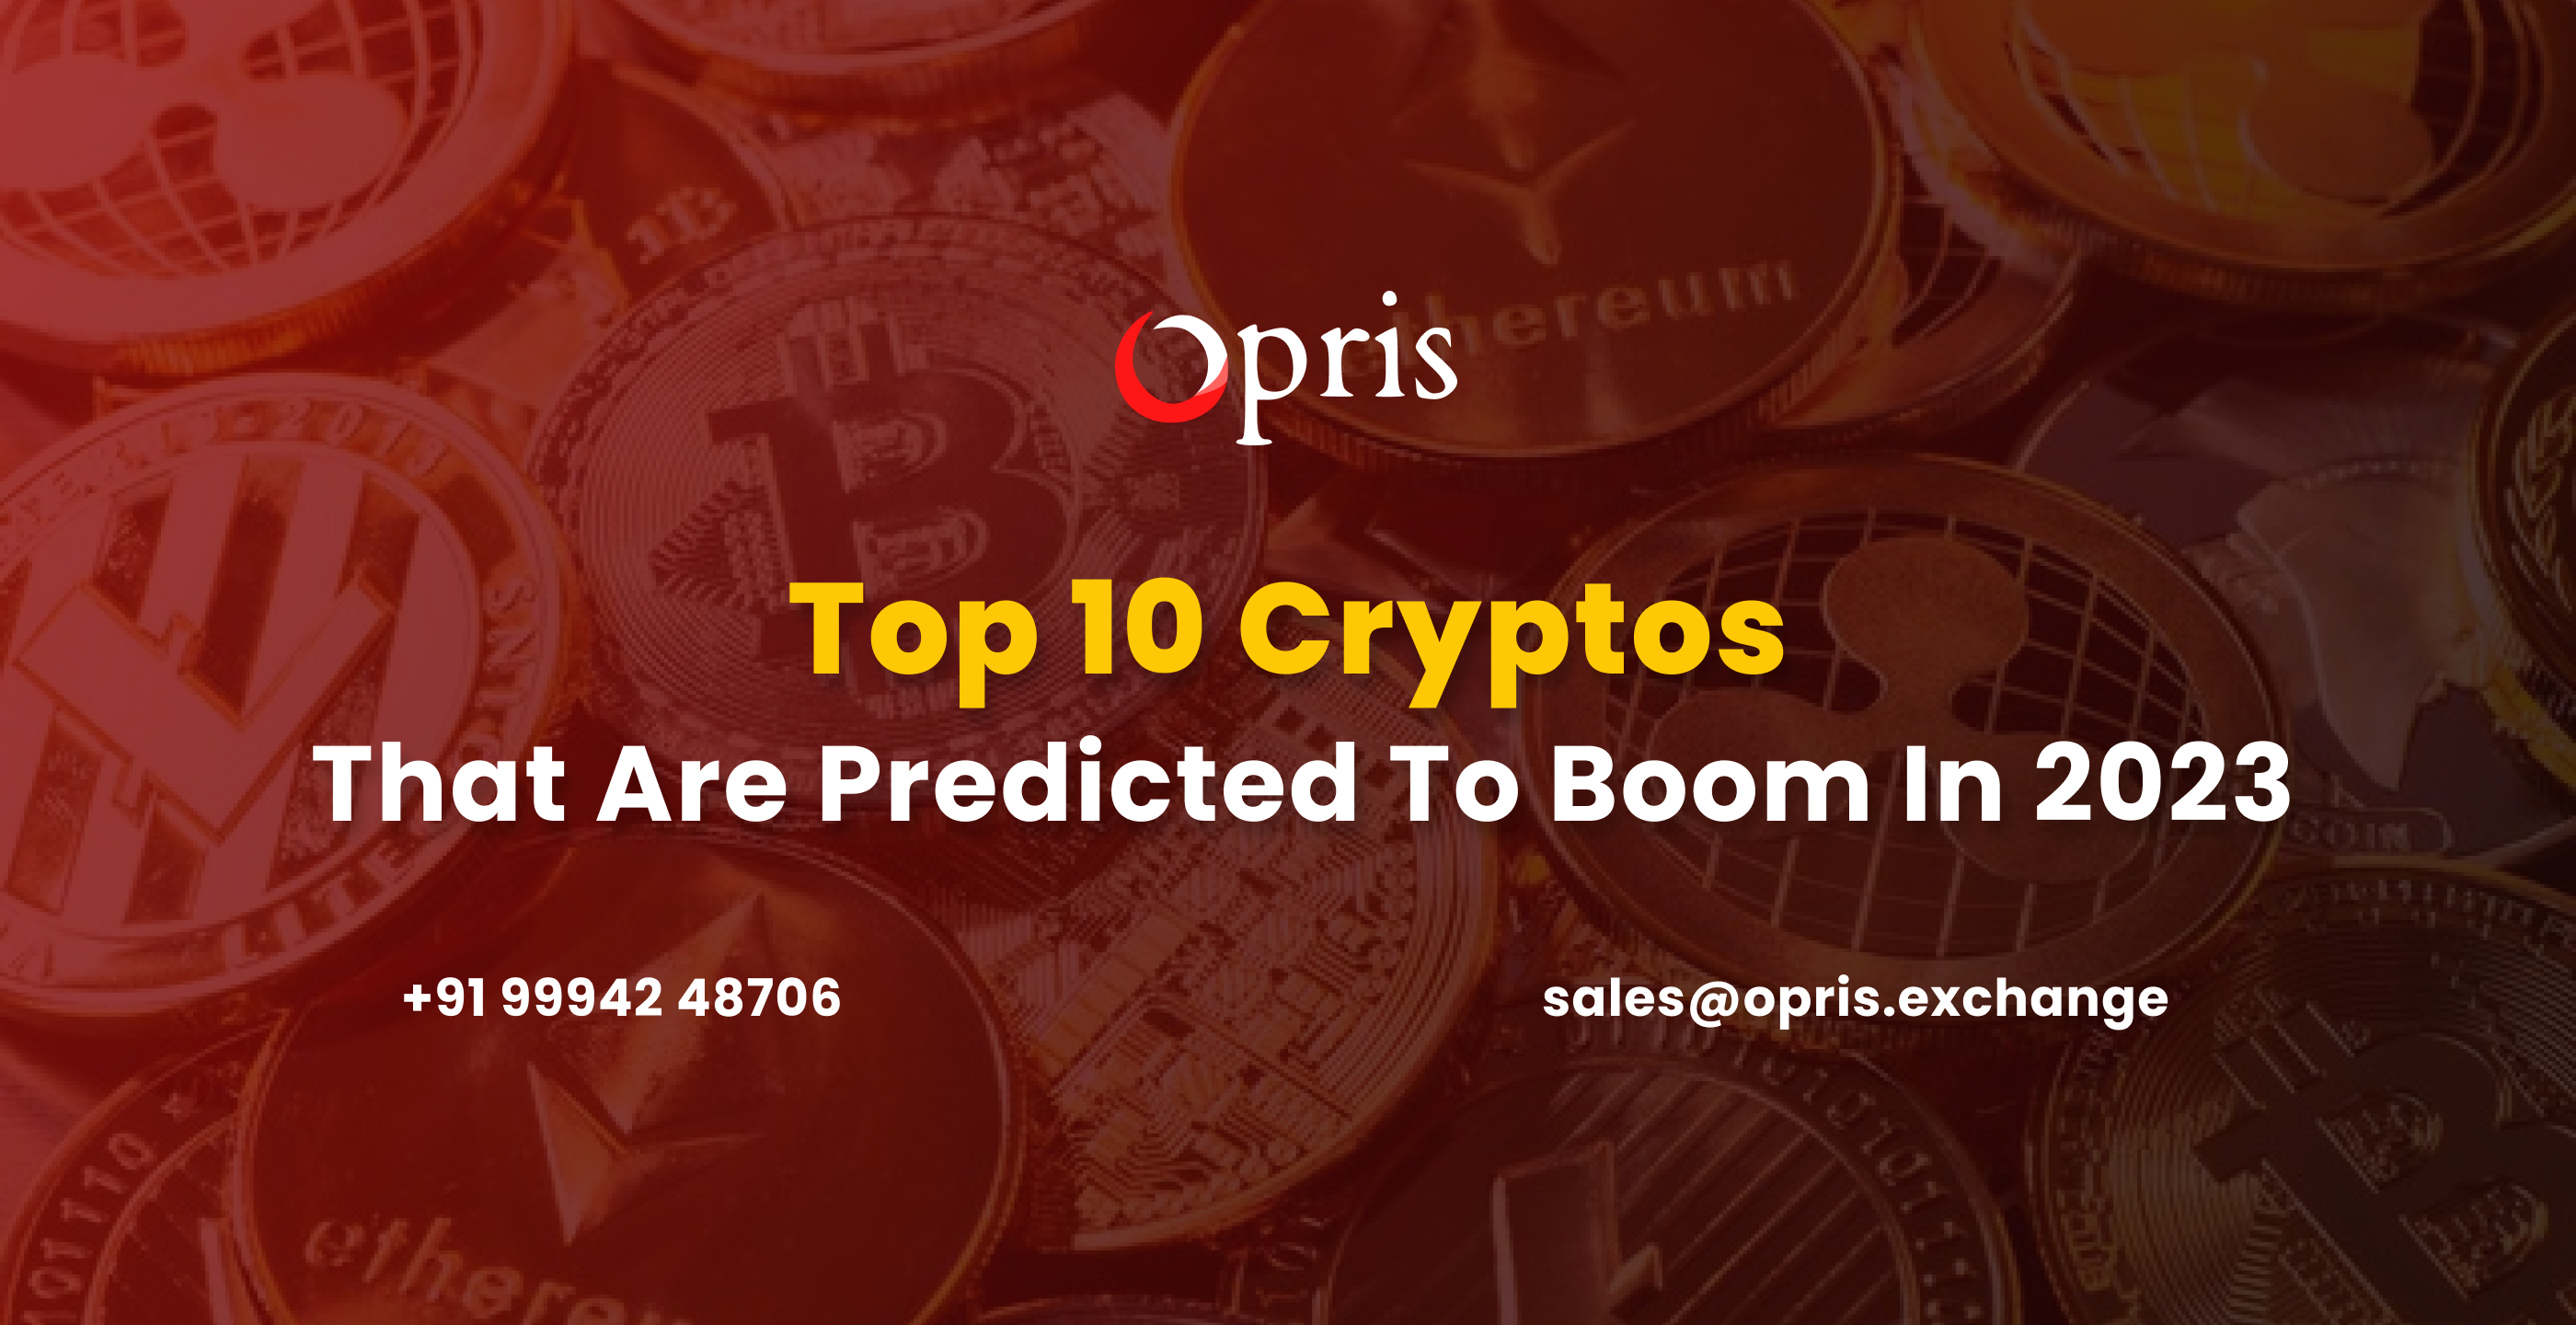 Top 10 Cryptos Prediction for 2023